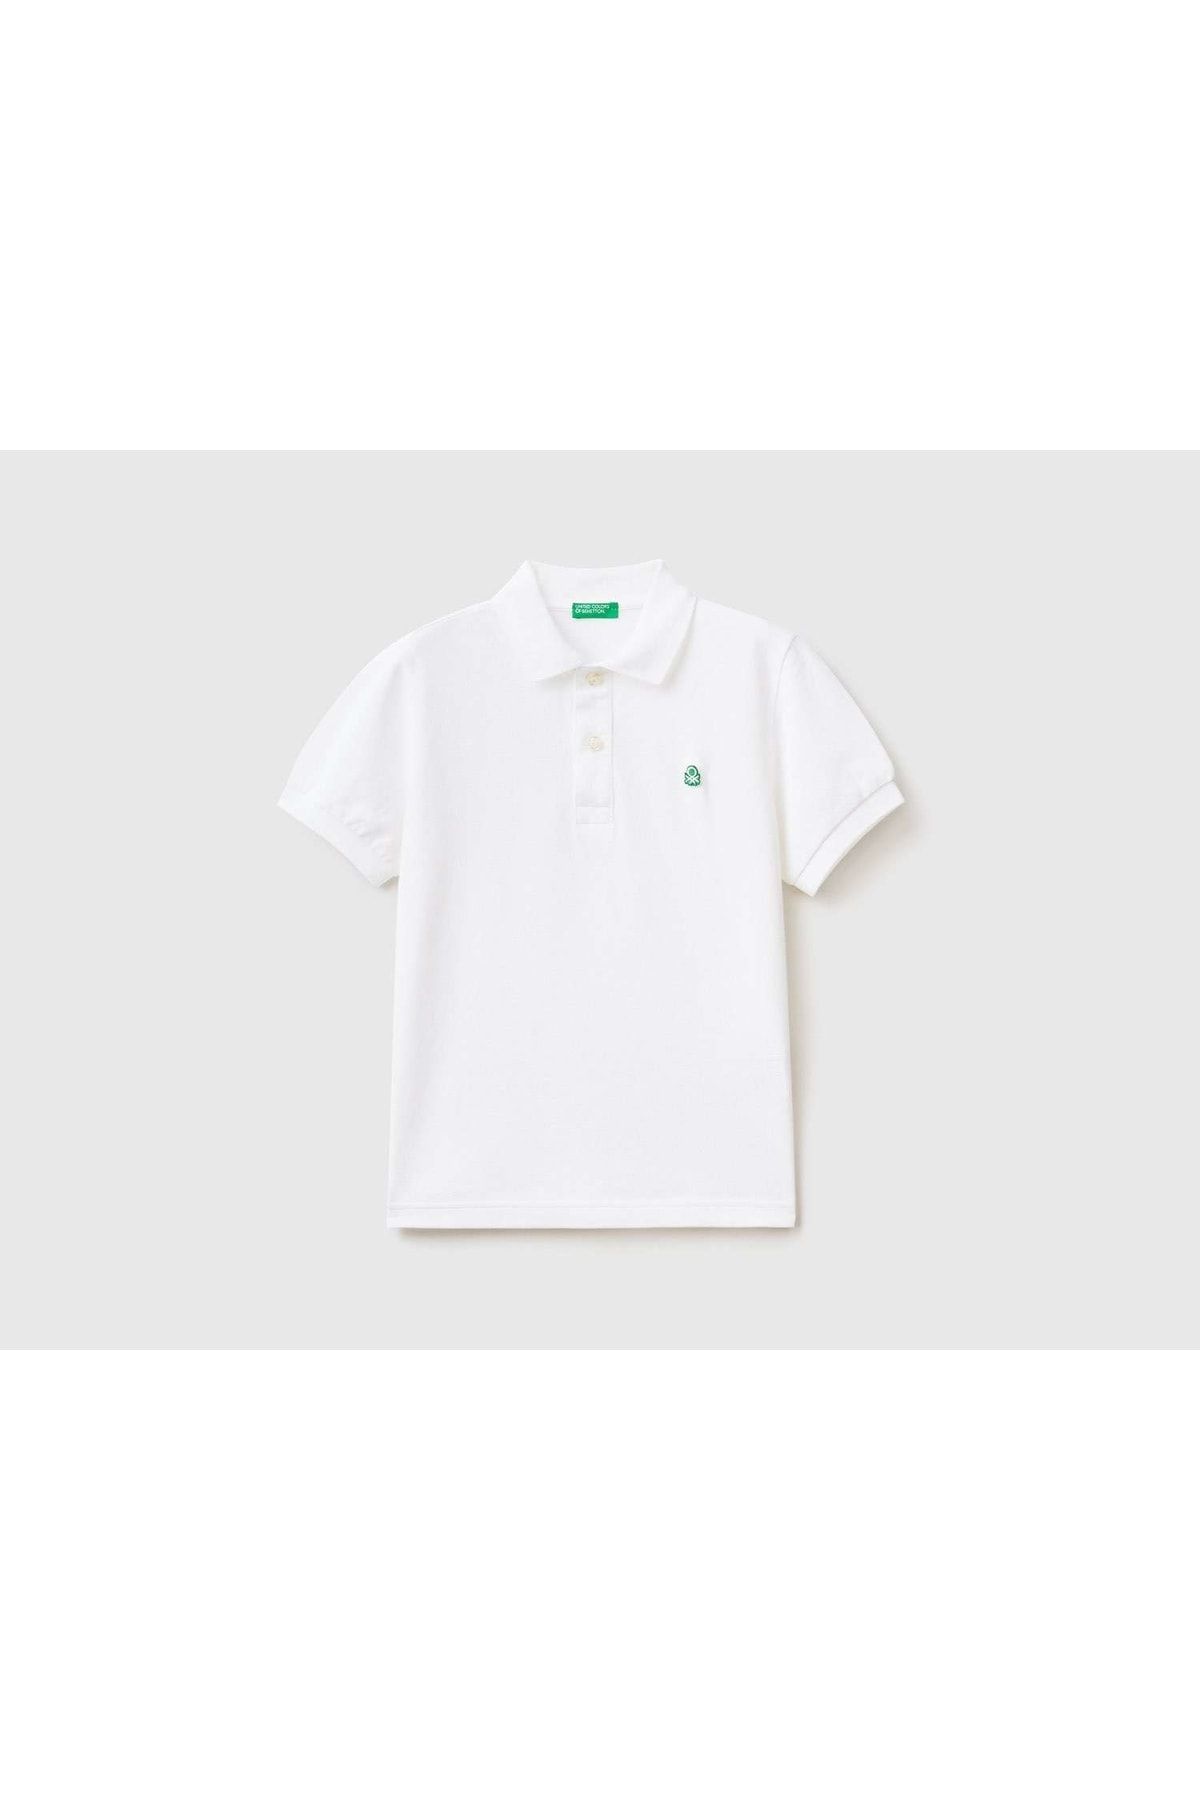 United Colors of Benetton Erkek Çocuk Beyaz Logolu Polo T-shirt